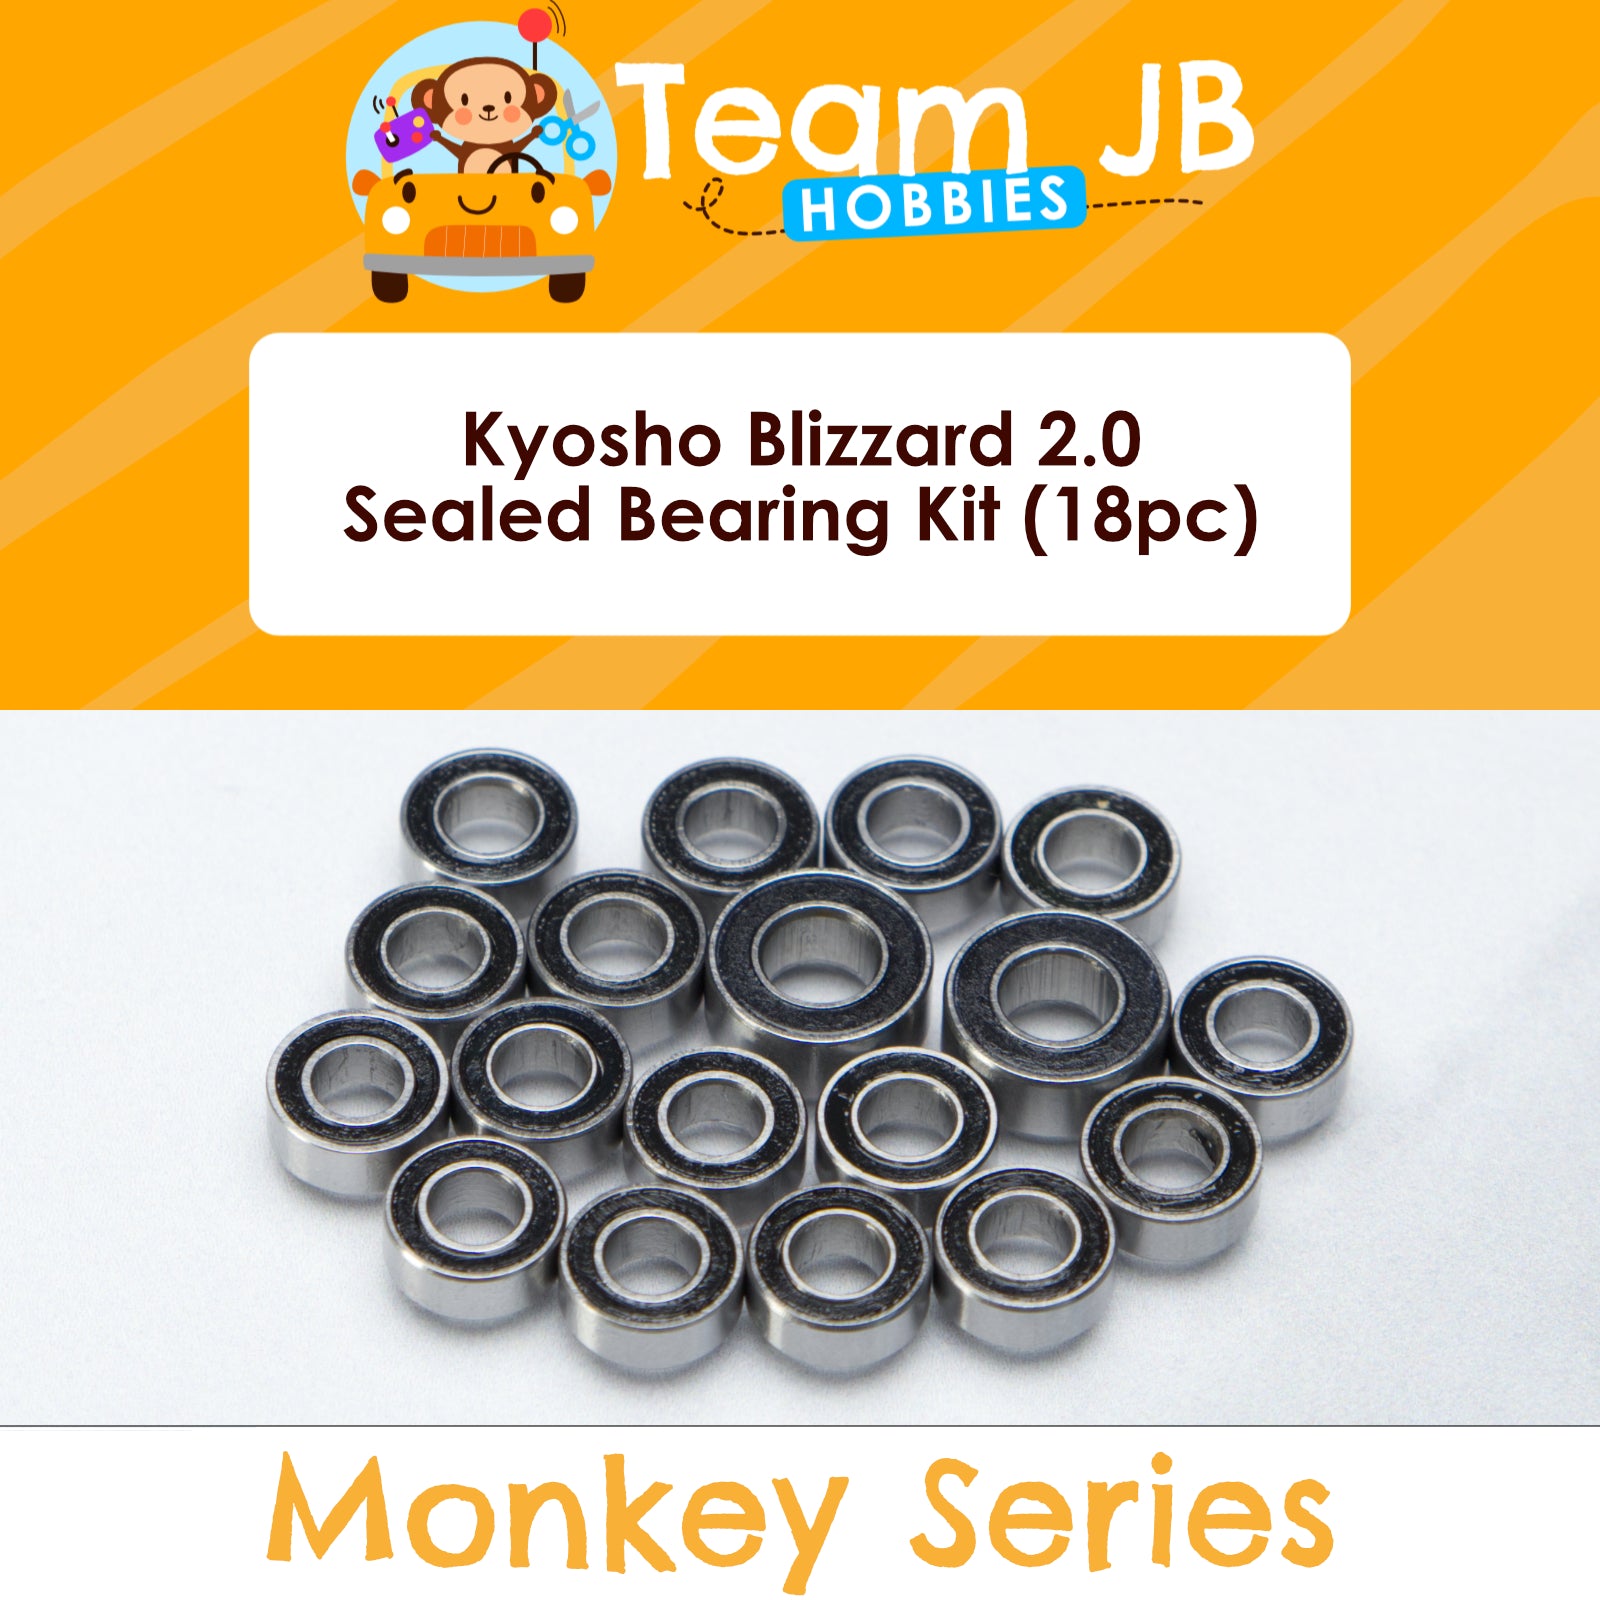 Kyosho Blizzard 2.0 - Sealed Bearing Kit